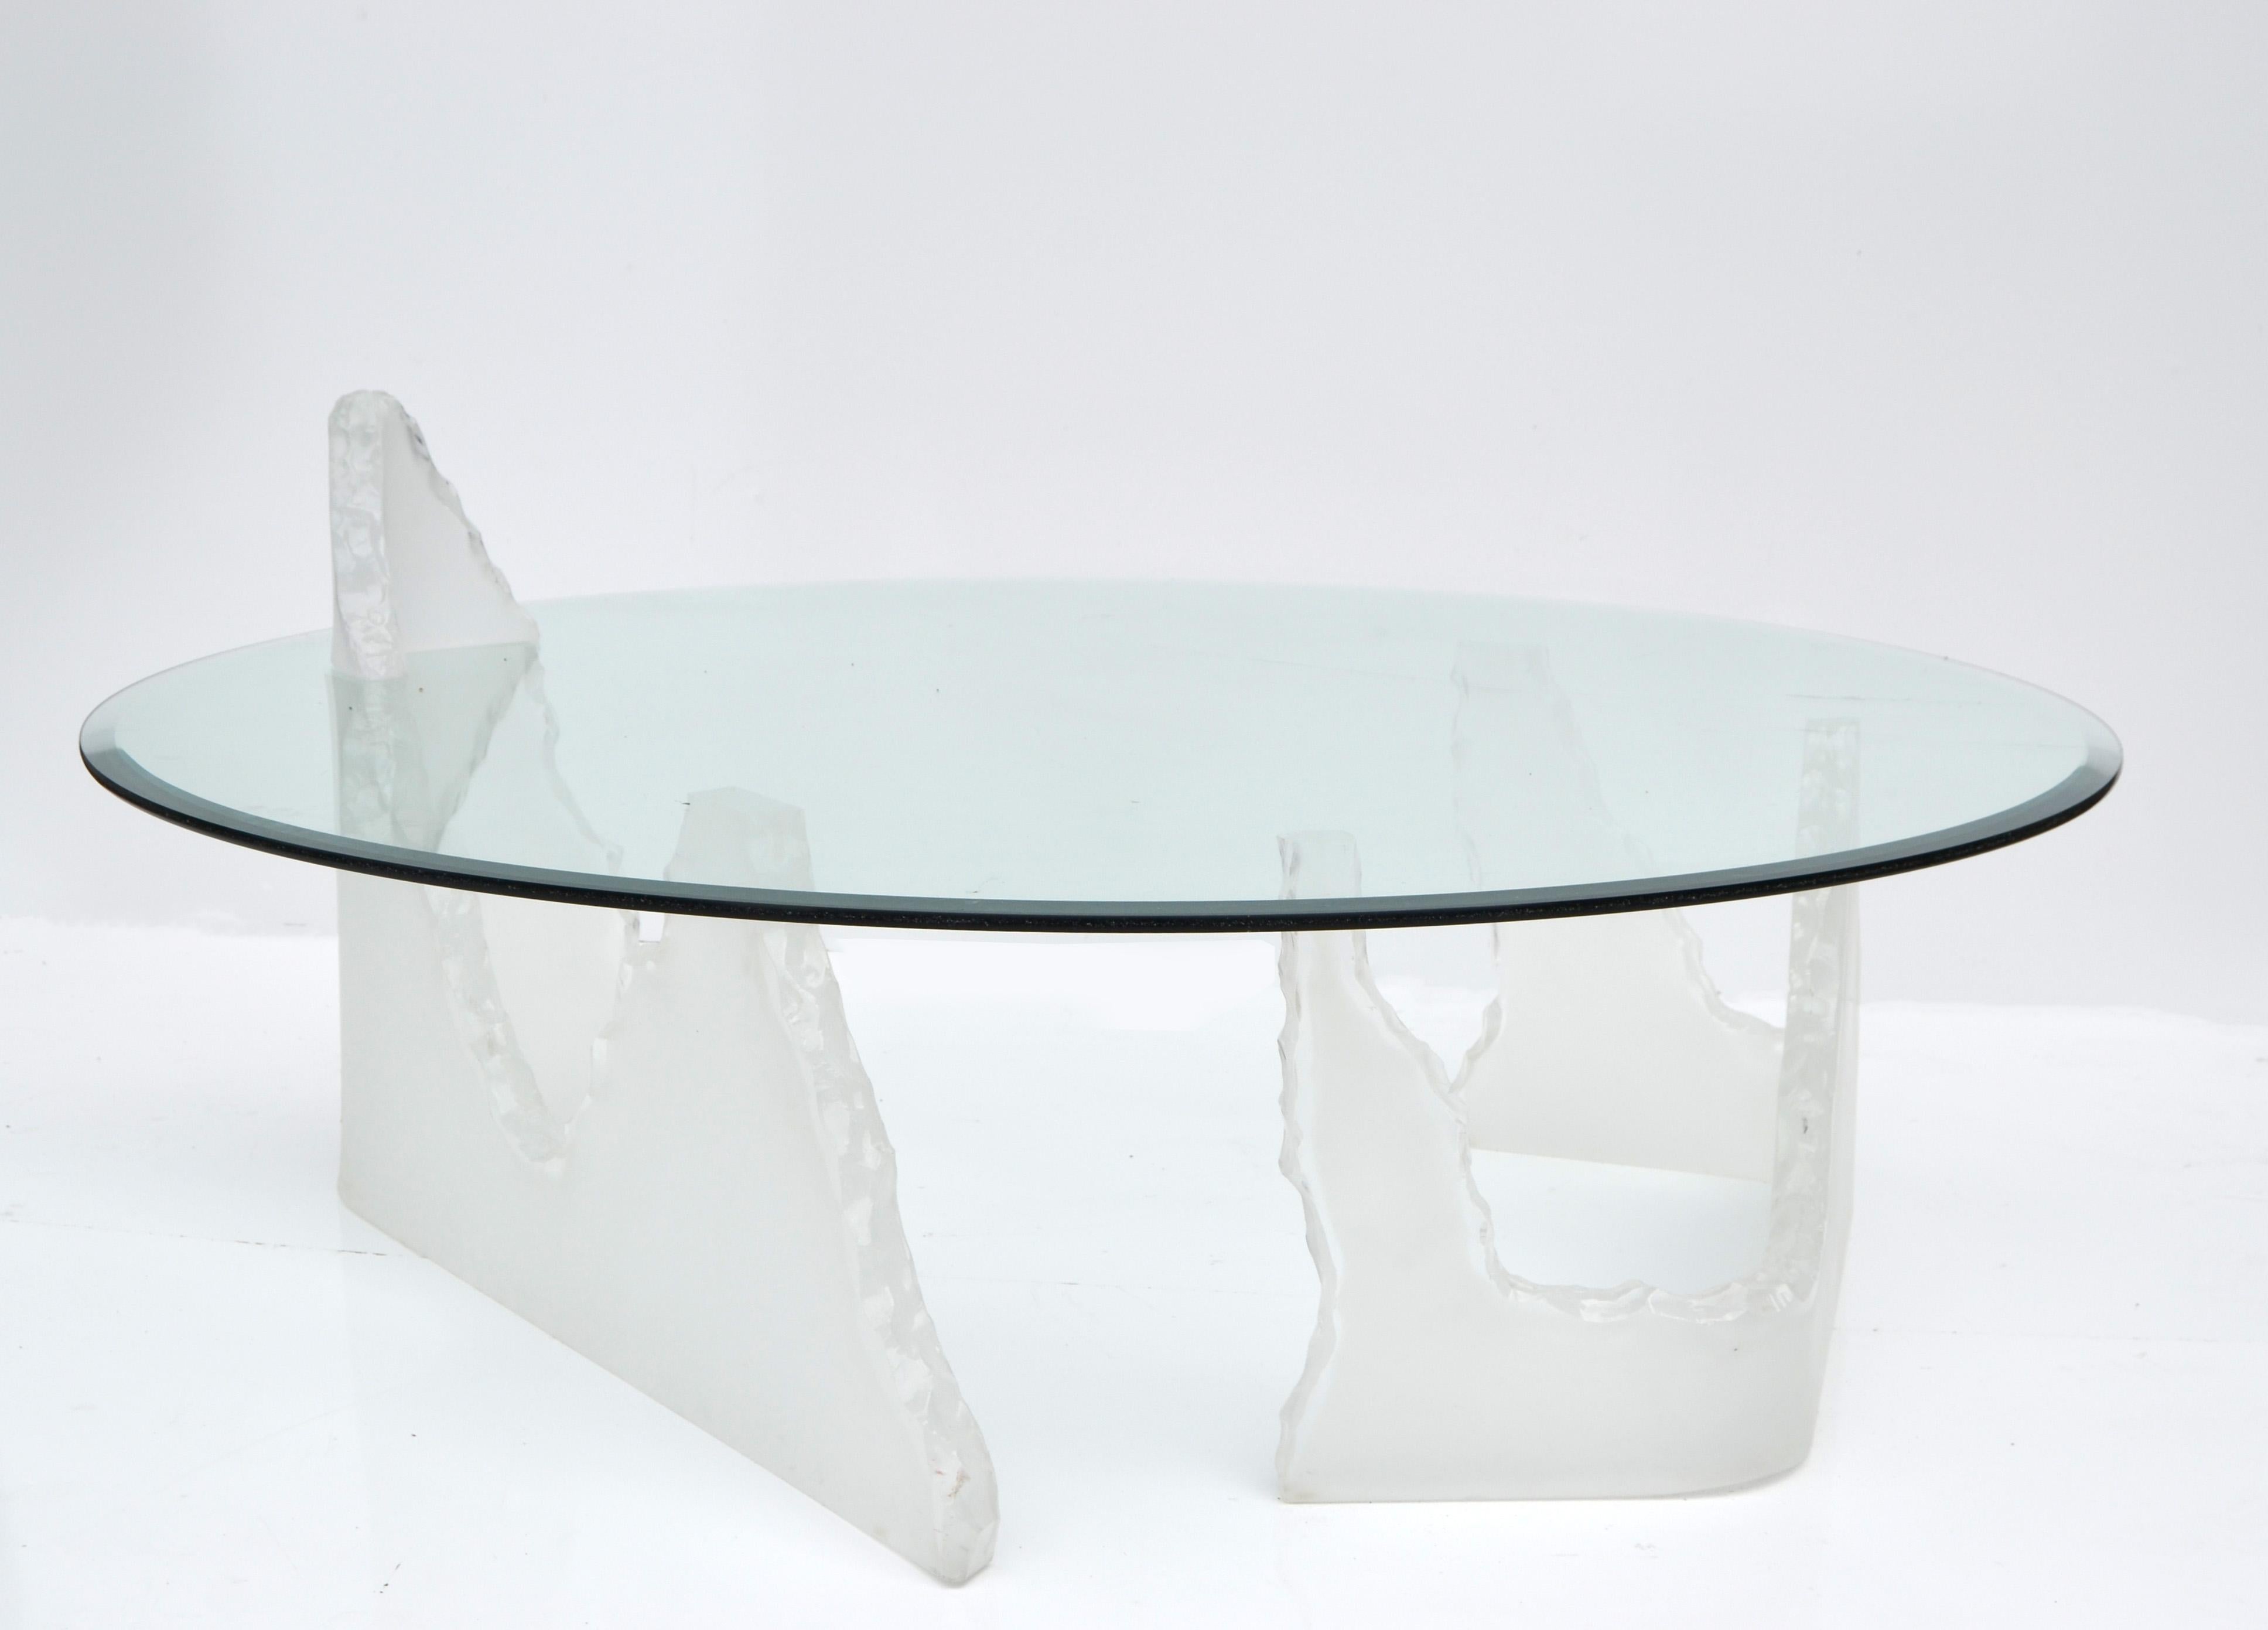 polar bear table with glass top